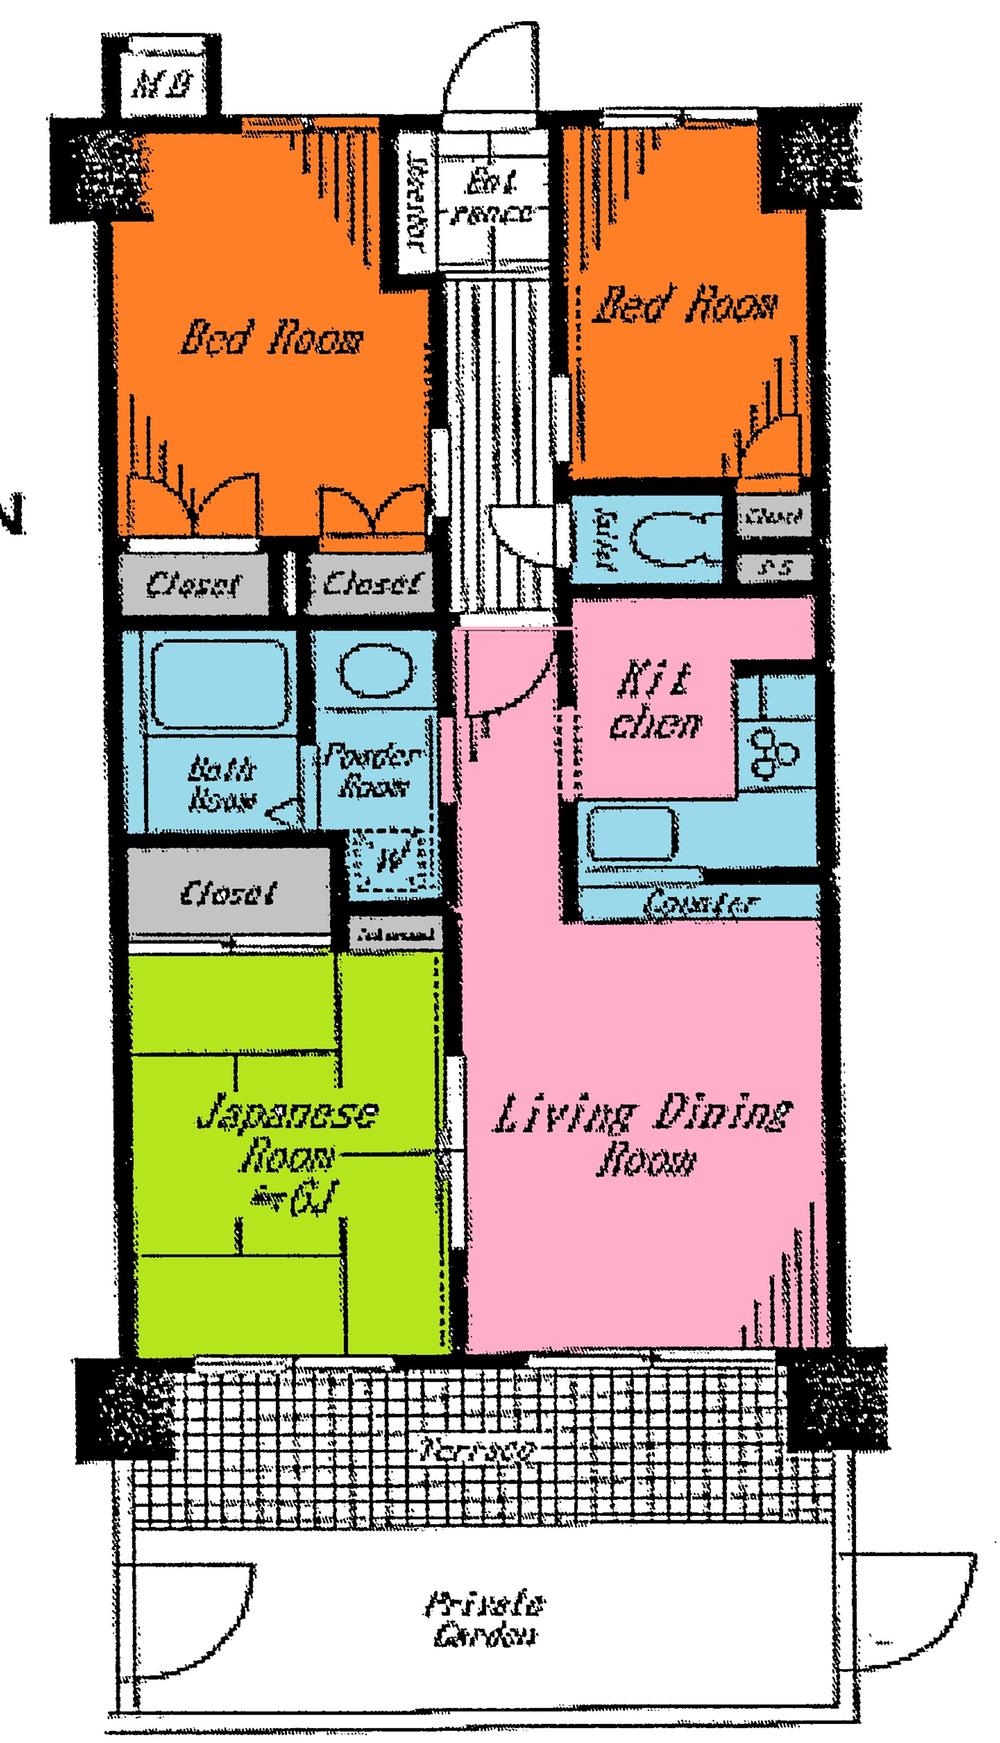 Floor plan. 3LDK, Price 14.8 million yen, Occupied area 57.07 sq m , Balcony area 6.72 sq m indoor (December 2013) Shooting